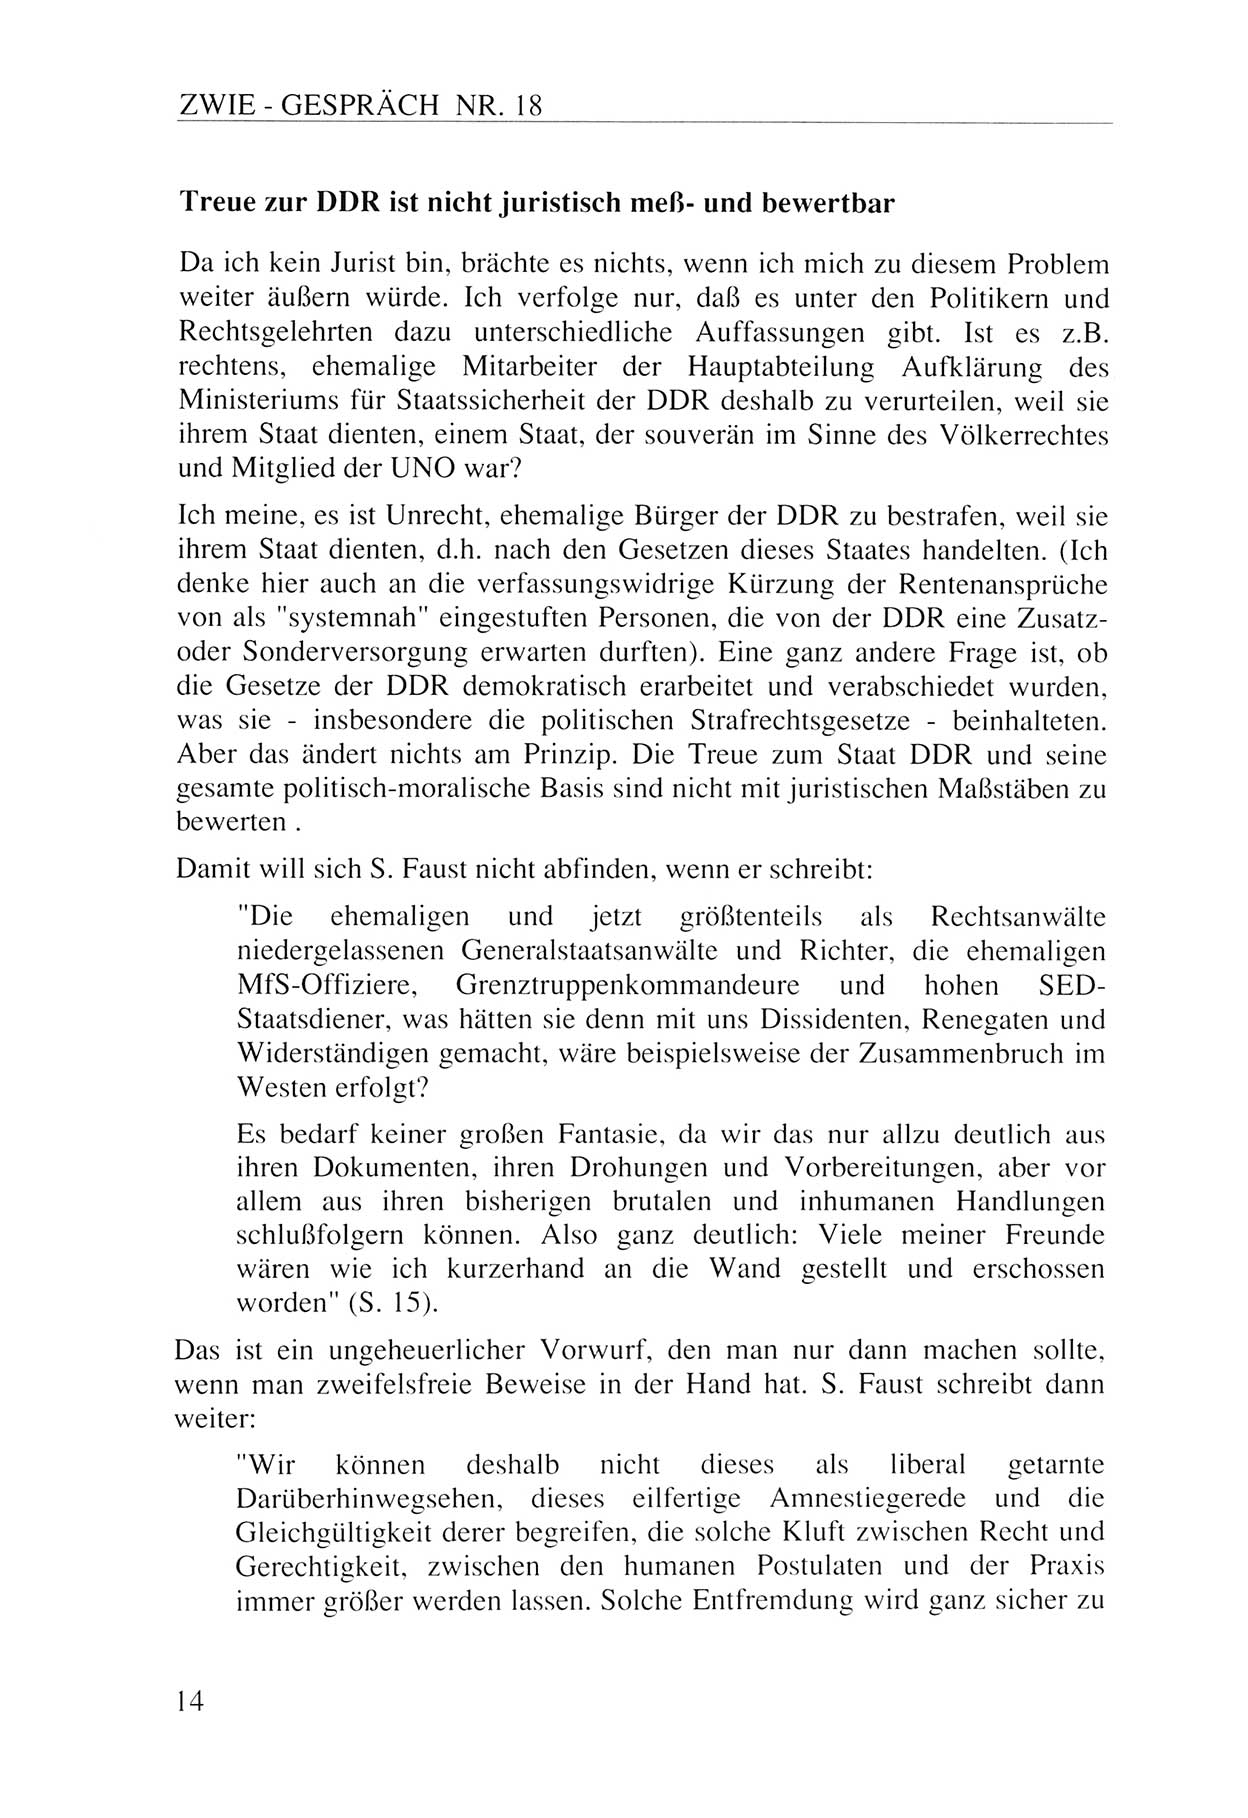 Zwie-Gespräch, Beiträge zur Aufarbeitung der Staatssicherheits-Vergangenheit [Deutsche Demokratische Republik (DDR)], Ausgabe Nr. 18, Berlin 1993, Seite 14 (Zwie-Gespr. Ausg. 18 1993, S. 14)